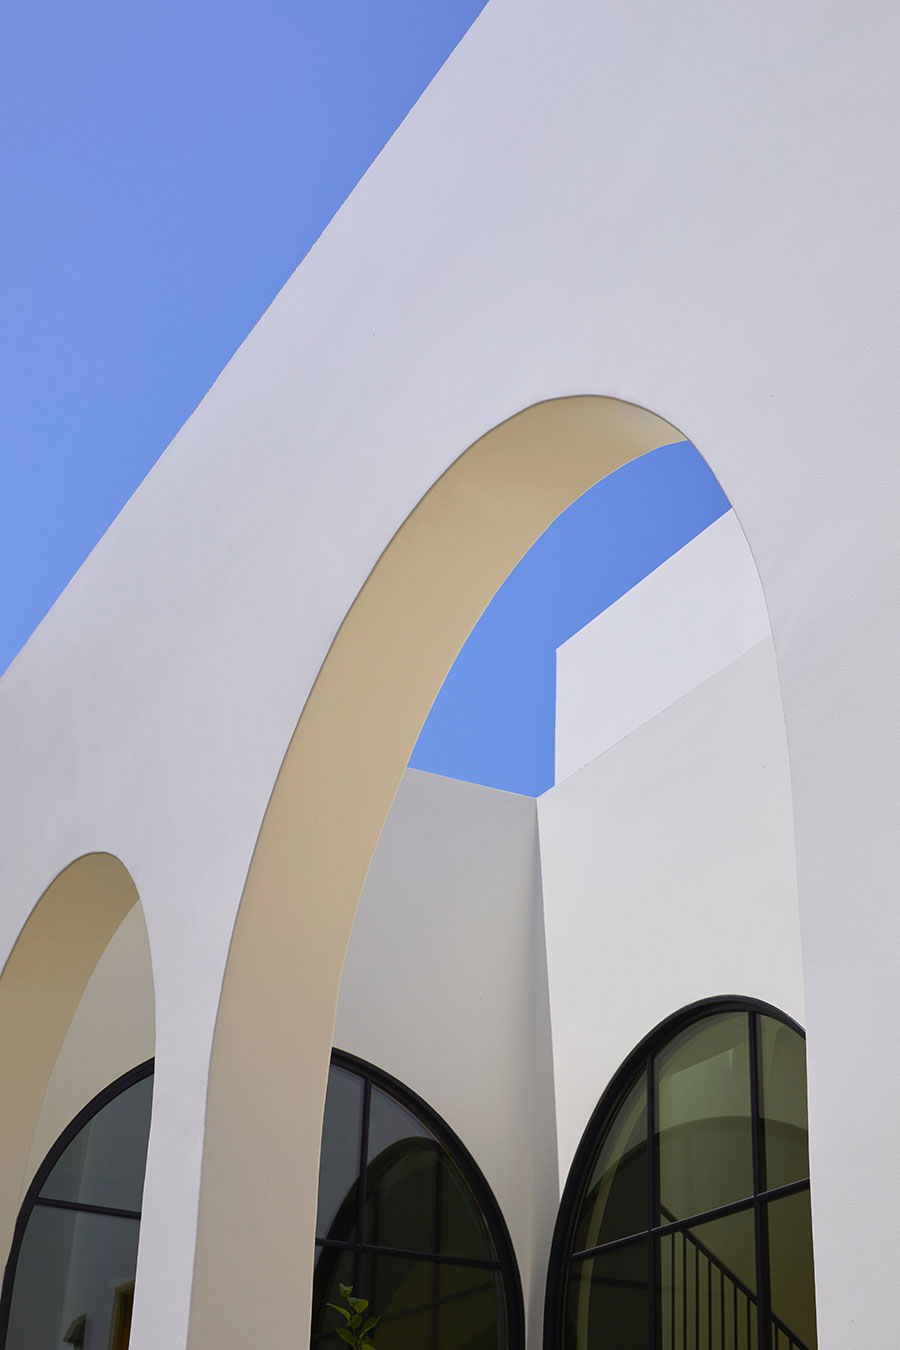 Великолепные арки и средиземноморское влияние: современный дом в Лос-Анджелесе